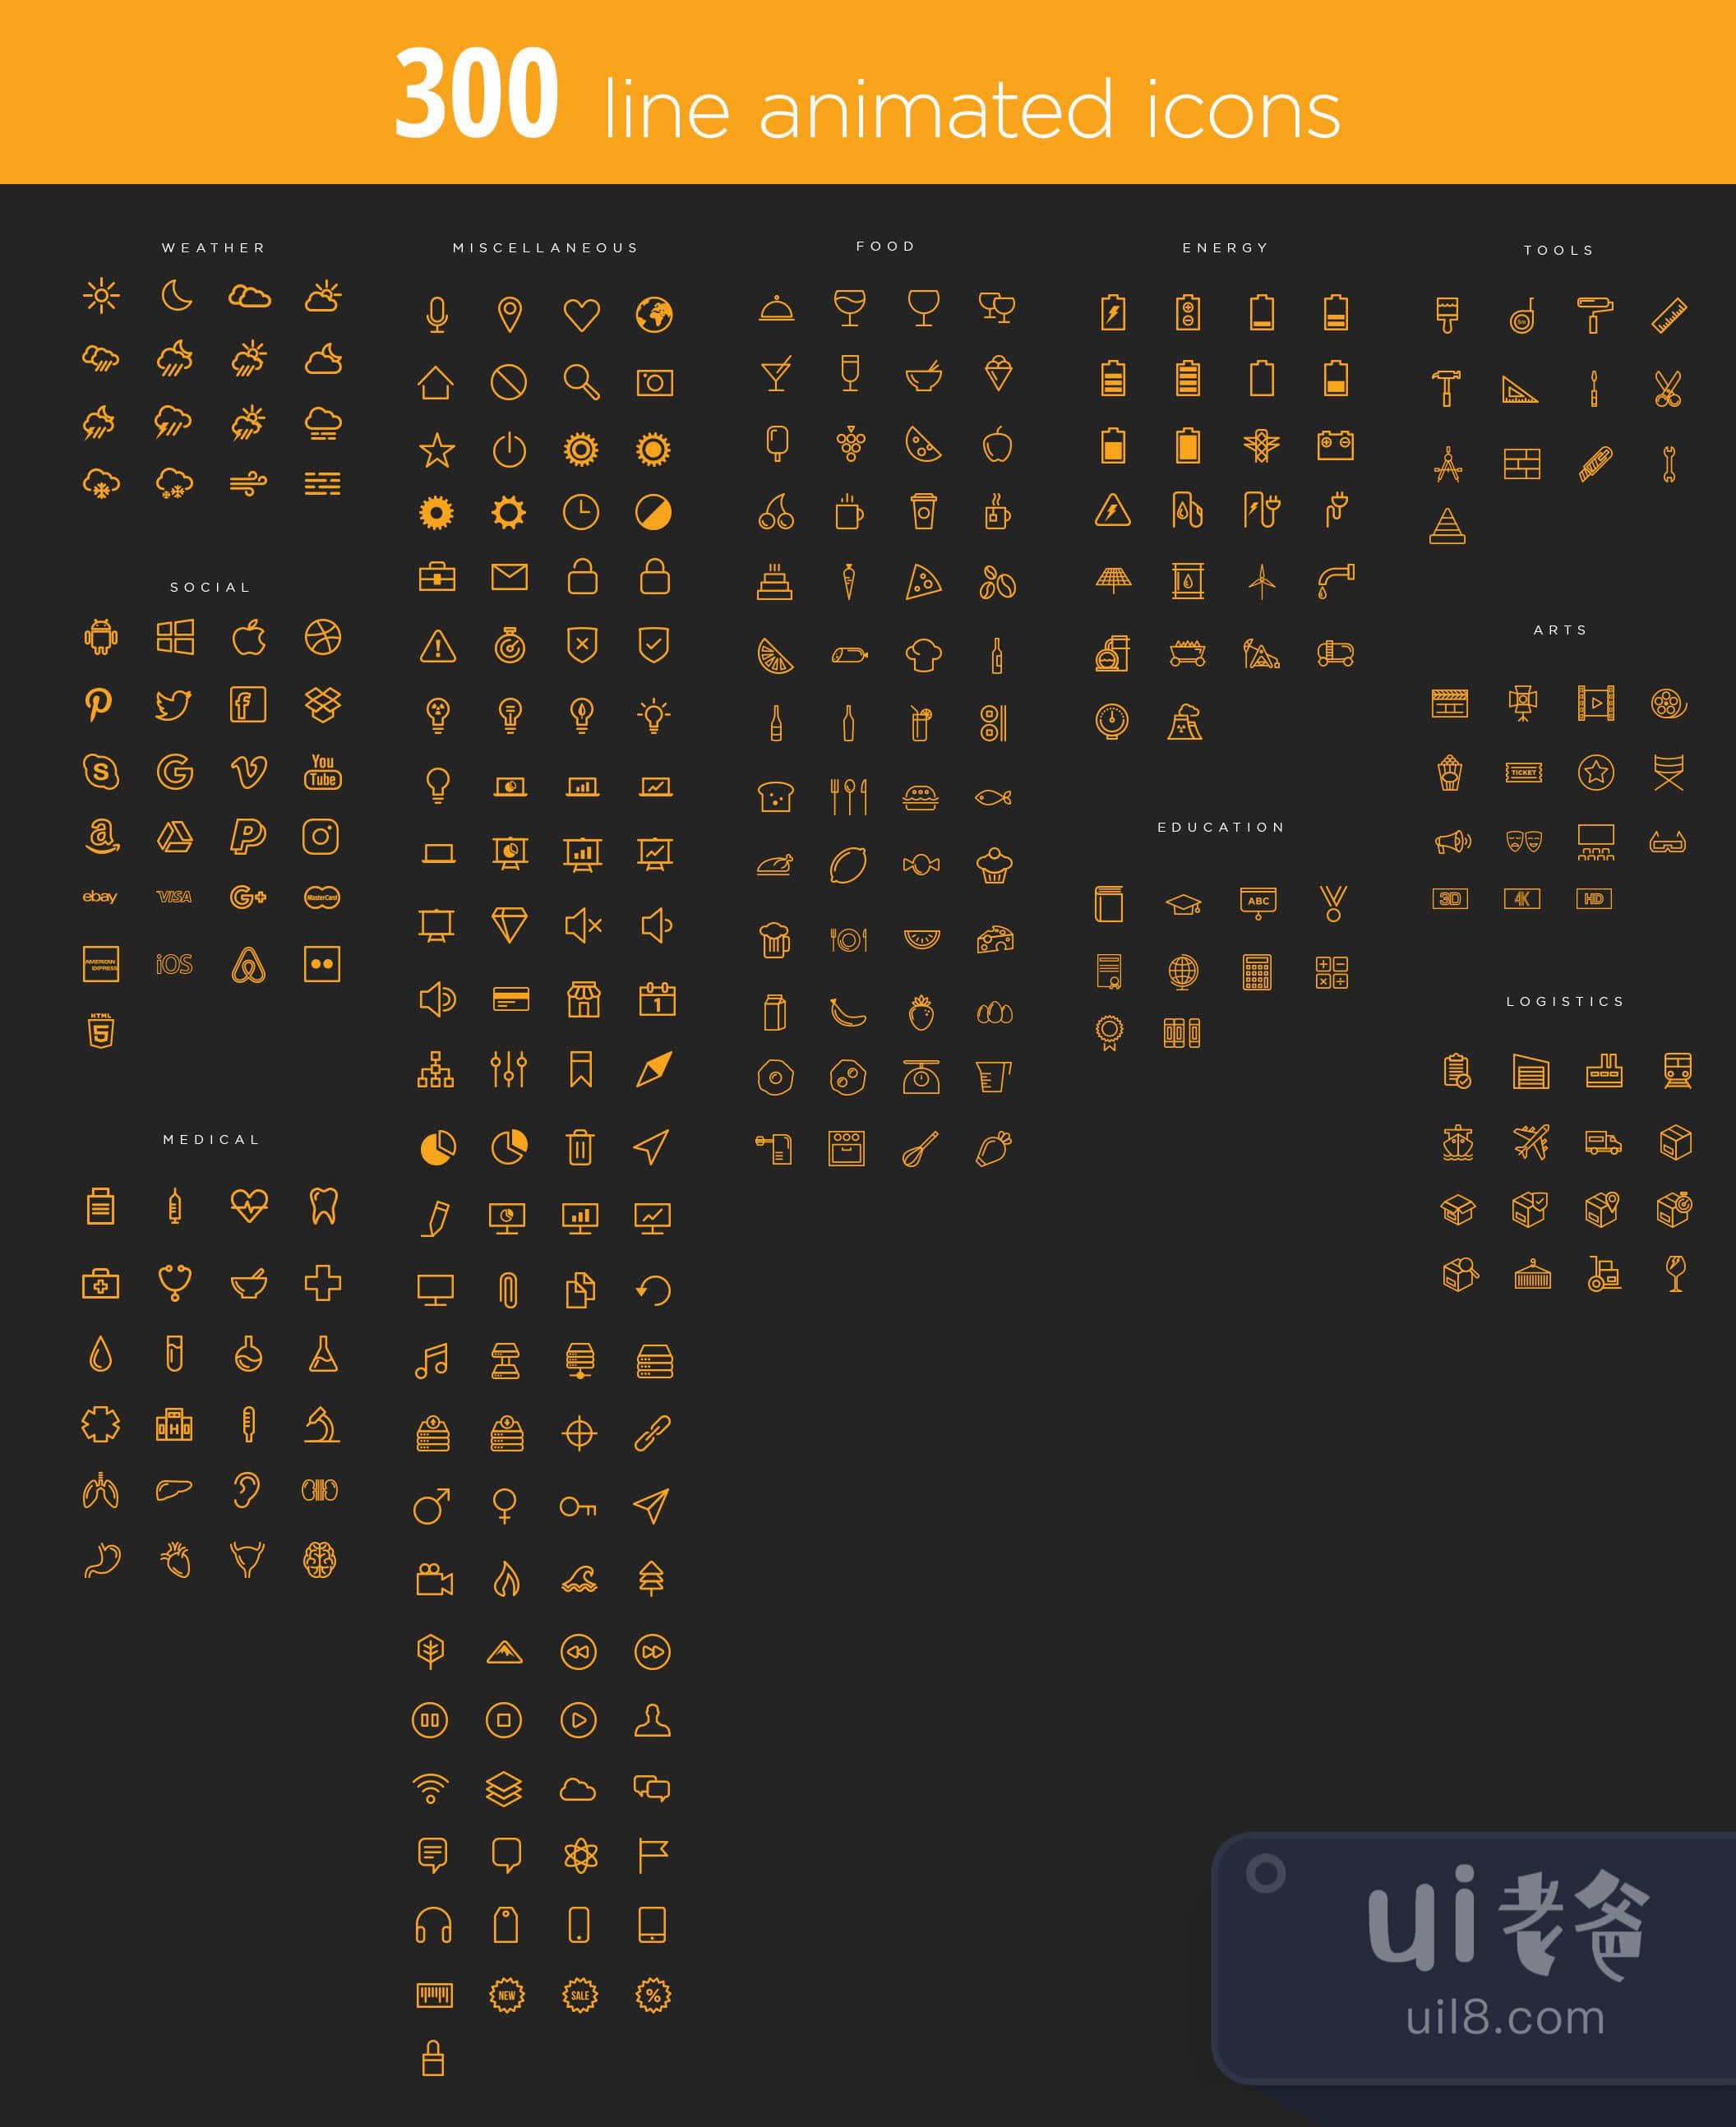 300个线条动画图标 (300 Line Animated Icons)插图